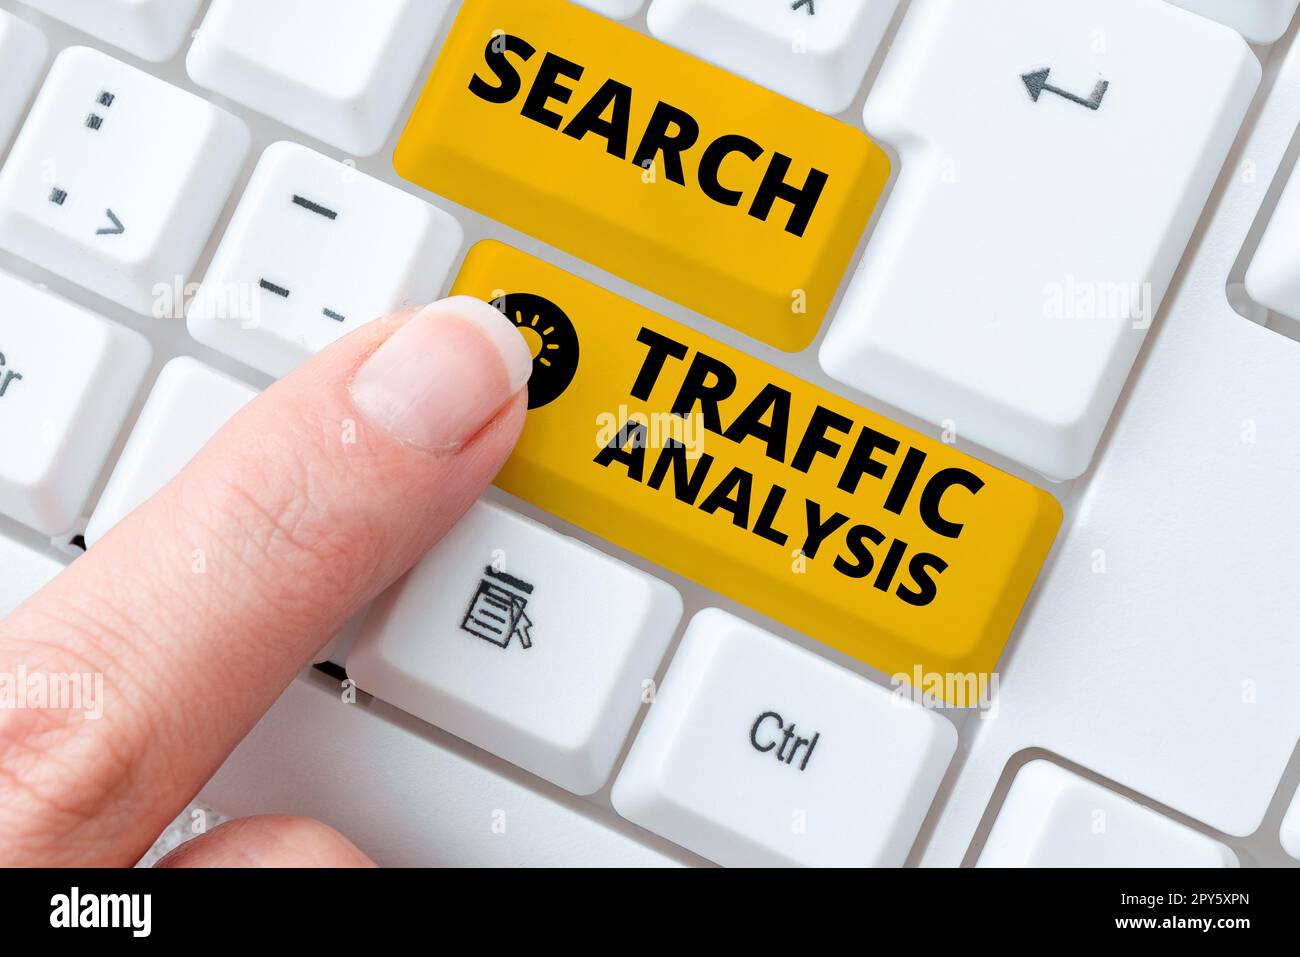 Handgeschriebenes Schild Suche Verkehrsanalyse. Word für Dienst, mit dem Internetnutzer nach Inhalten suchen können Stockfoto